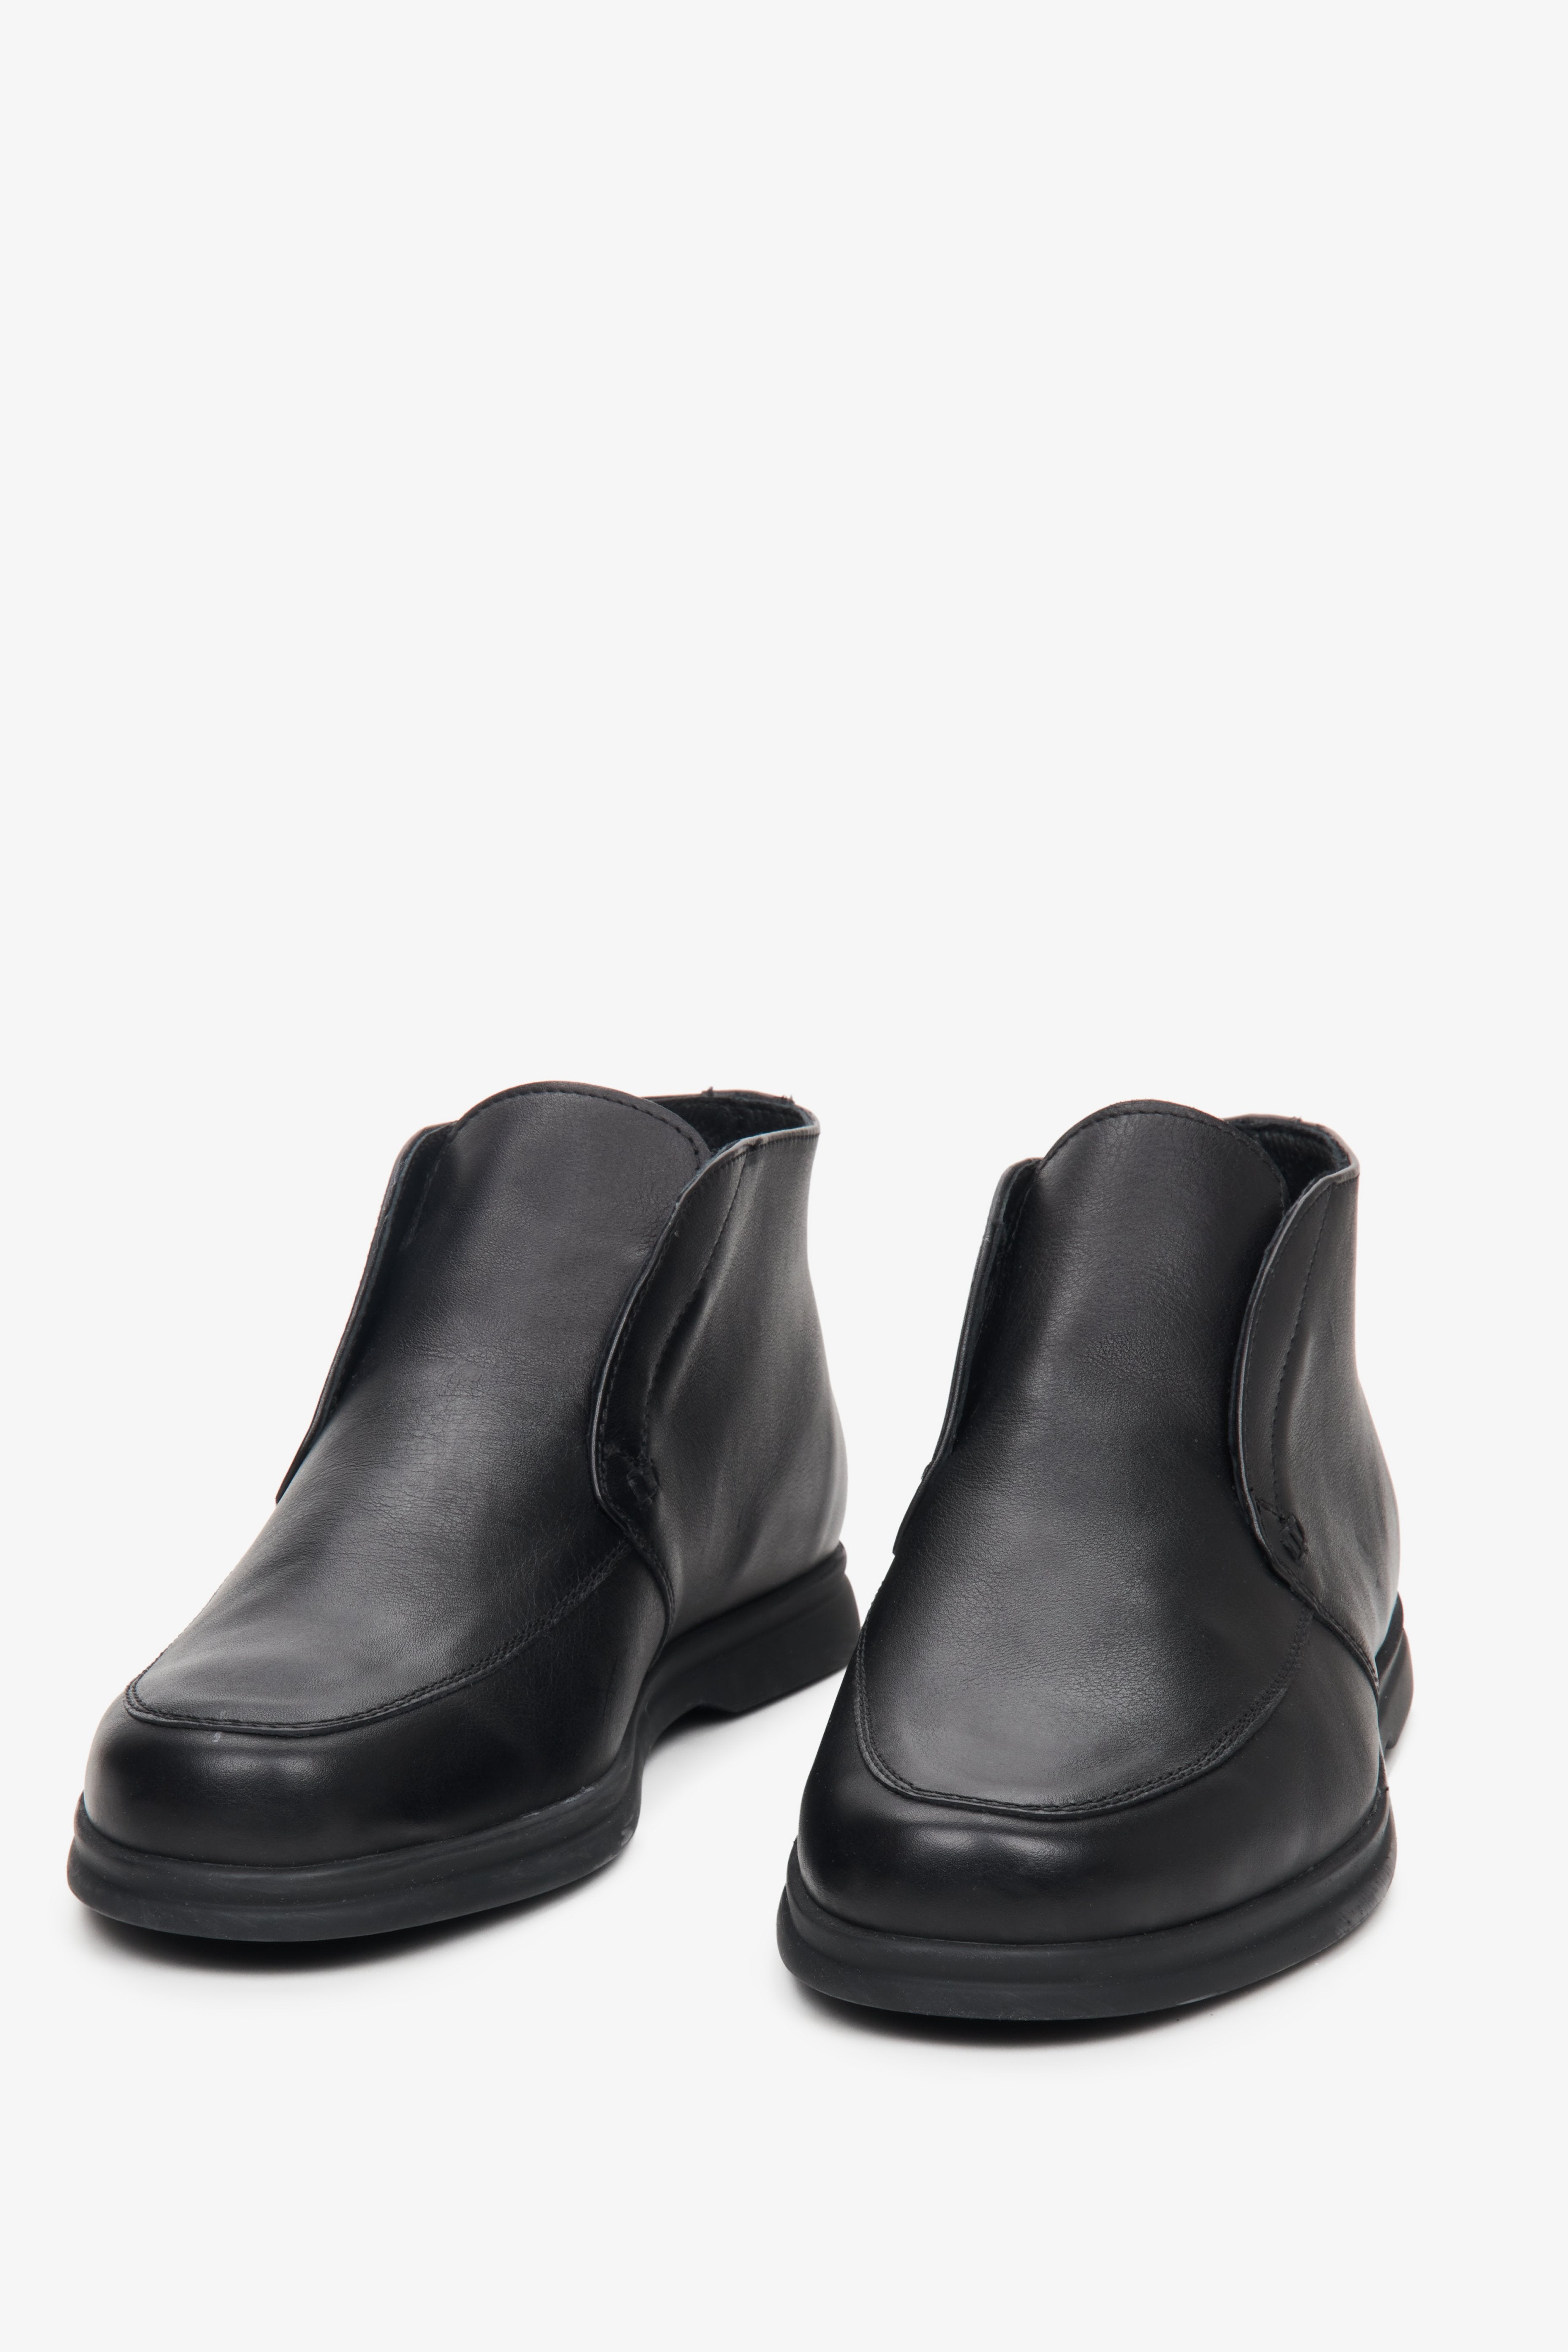 Męskie botki jesienne ze skóry naturalnej w kolorze czarnym - zbliżenie na przód obuwia marki Estro.